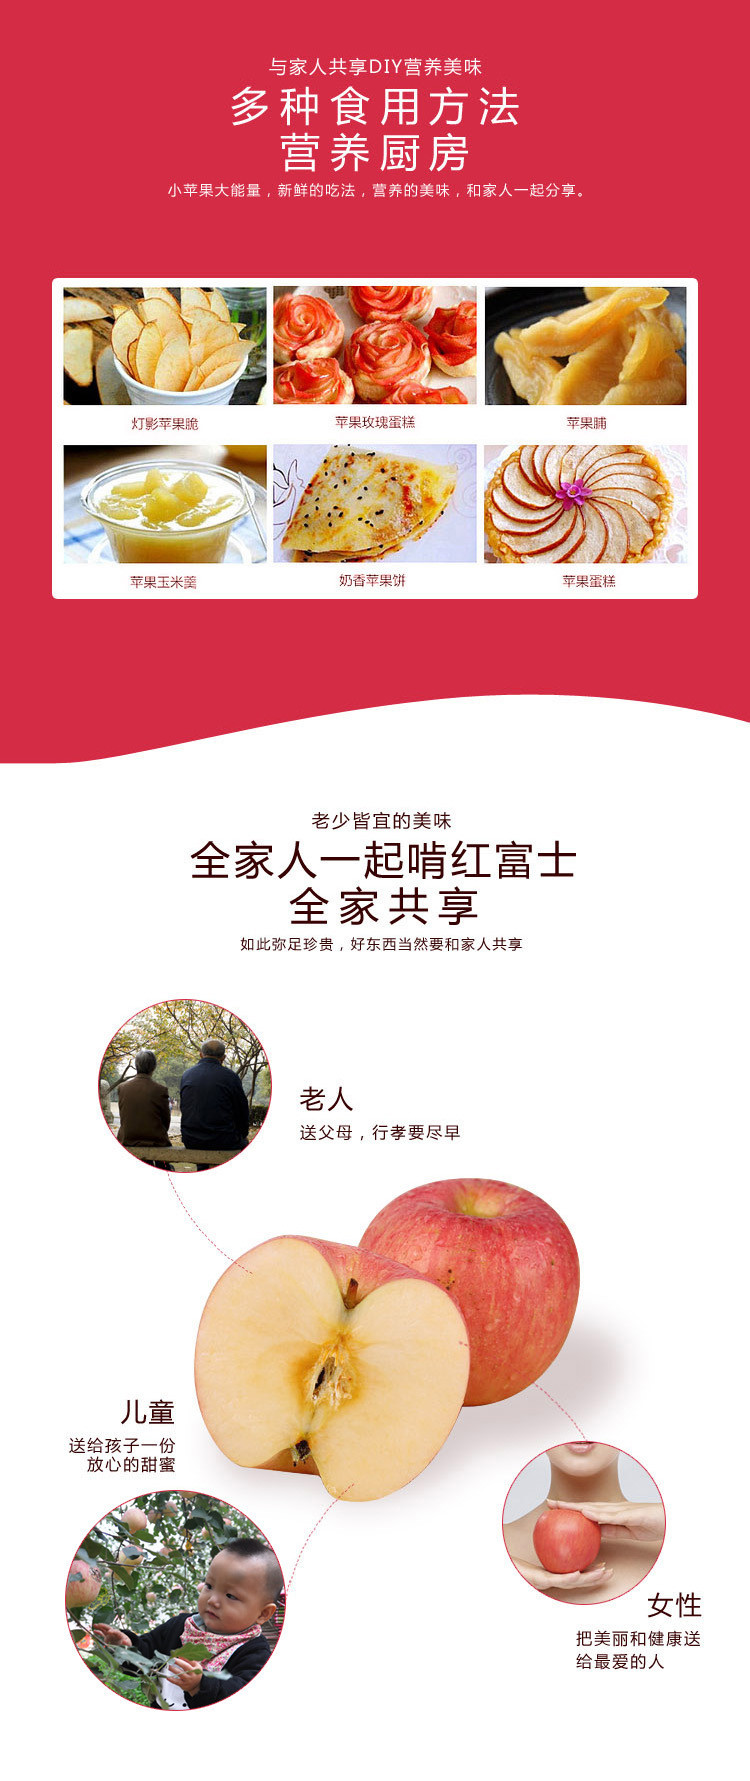 洛邮记 【金融积分兑换】力丰 2.5kg 上戈红富士苹果